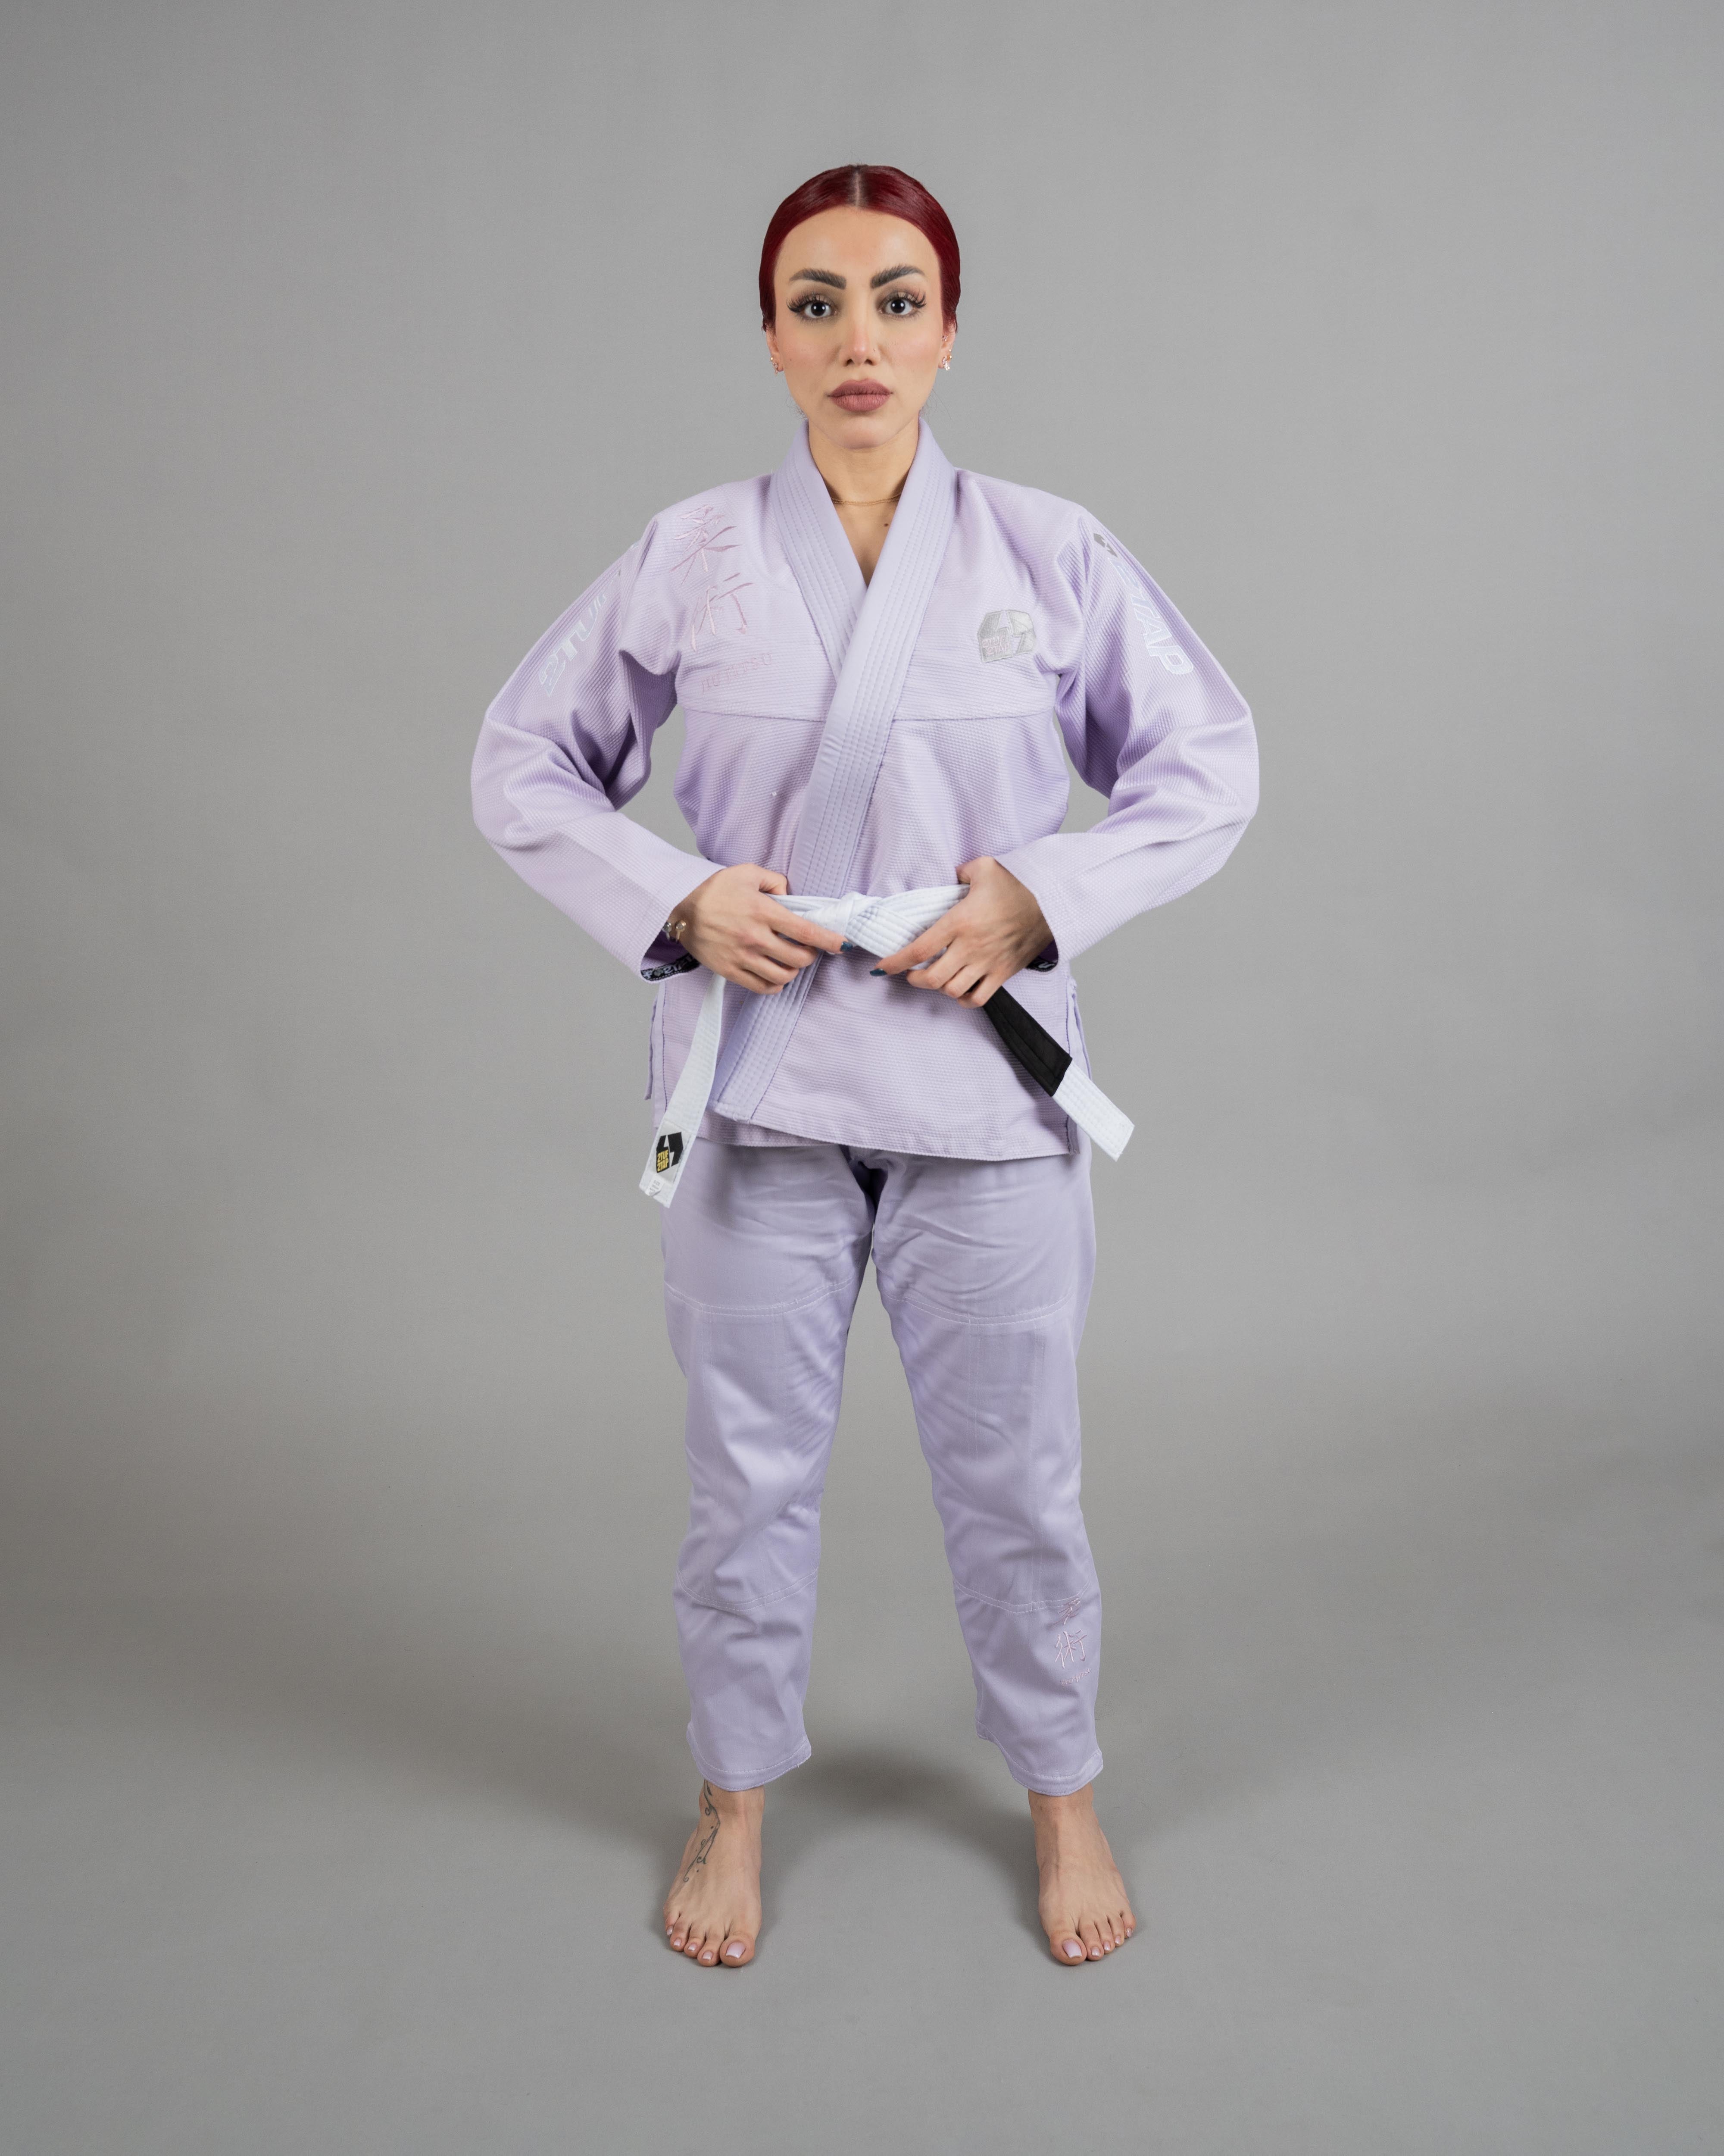 'Bridge' Jiu-Jitsu Gi Uniform - Thistle Purple/Lavendar